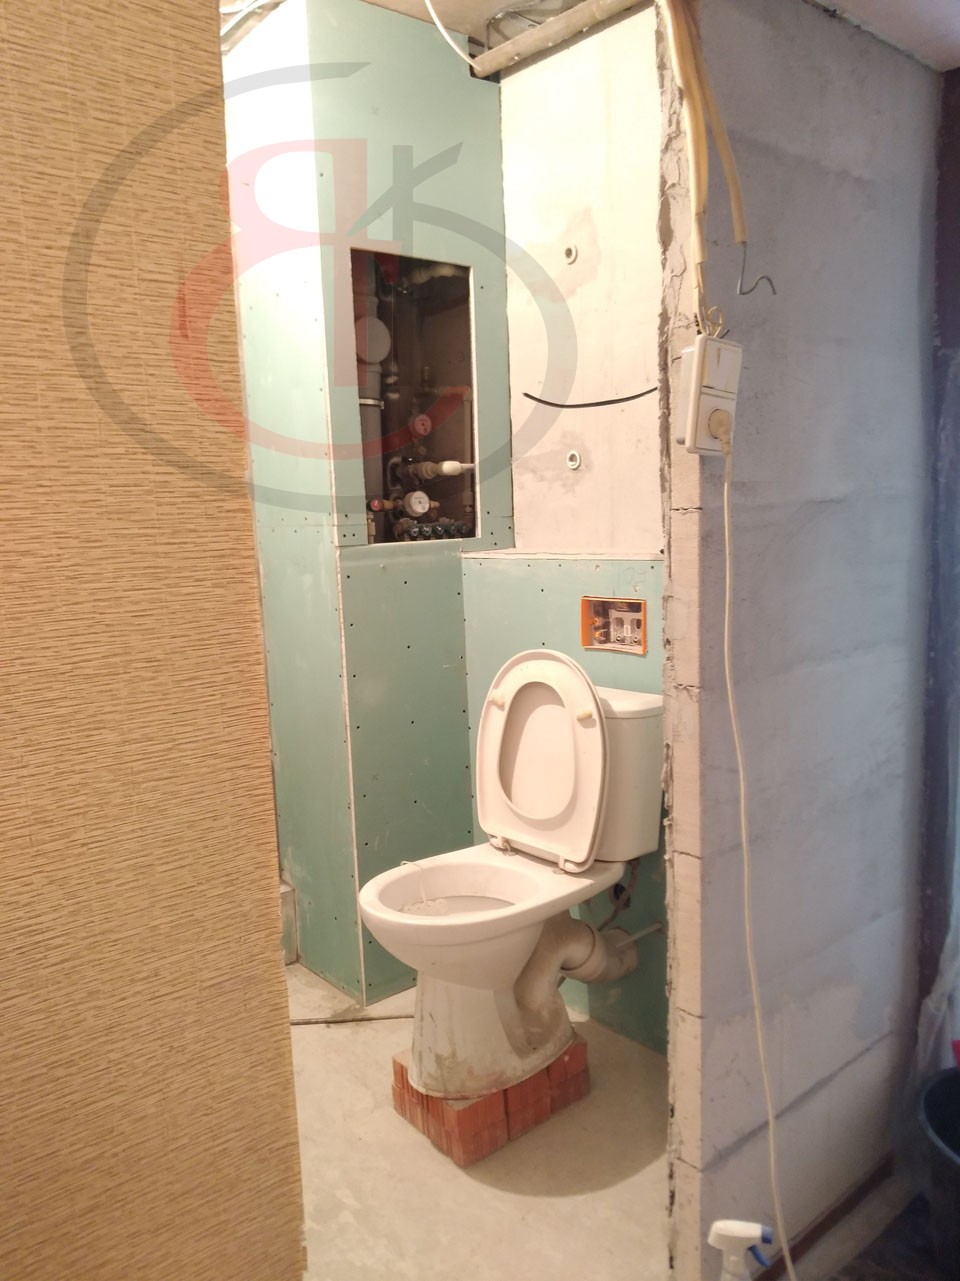 Капитальный ремонт маленькой ванной комнаты, Кетчерская улица 10, ОБЗОР ЧЕРНОВОЙ ОТДЕЛКИ (18)